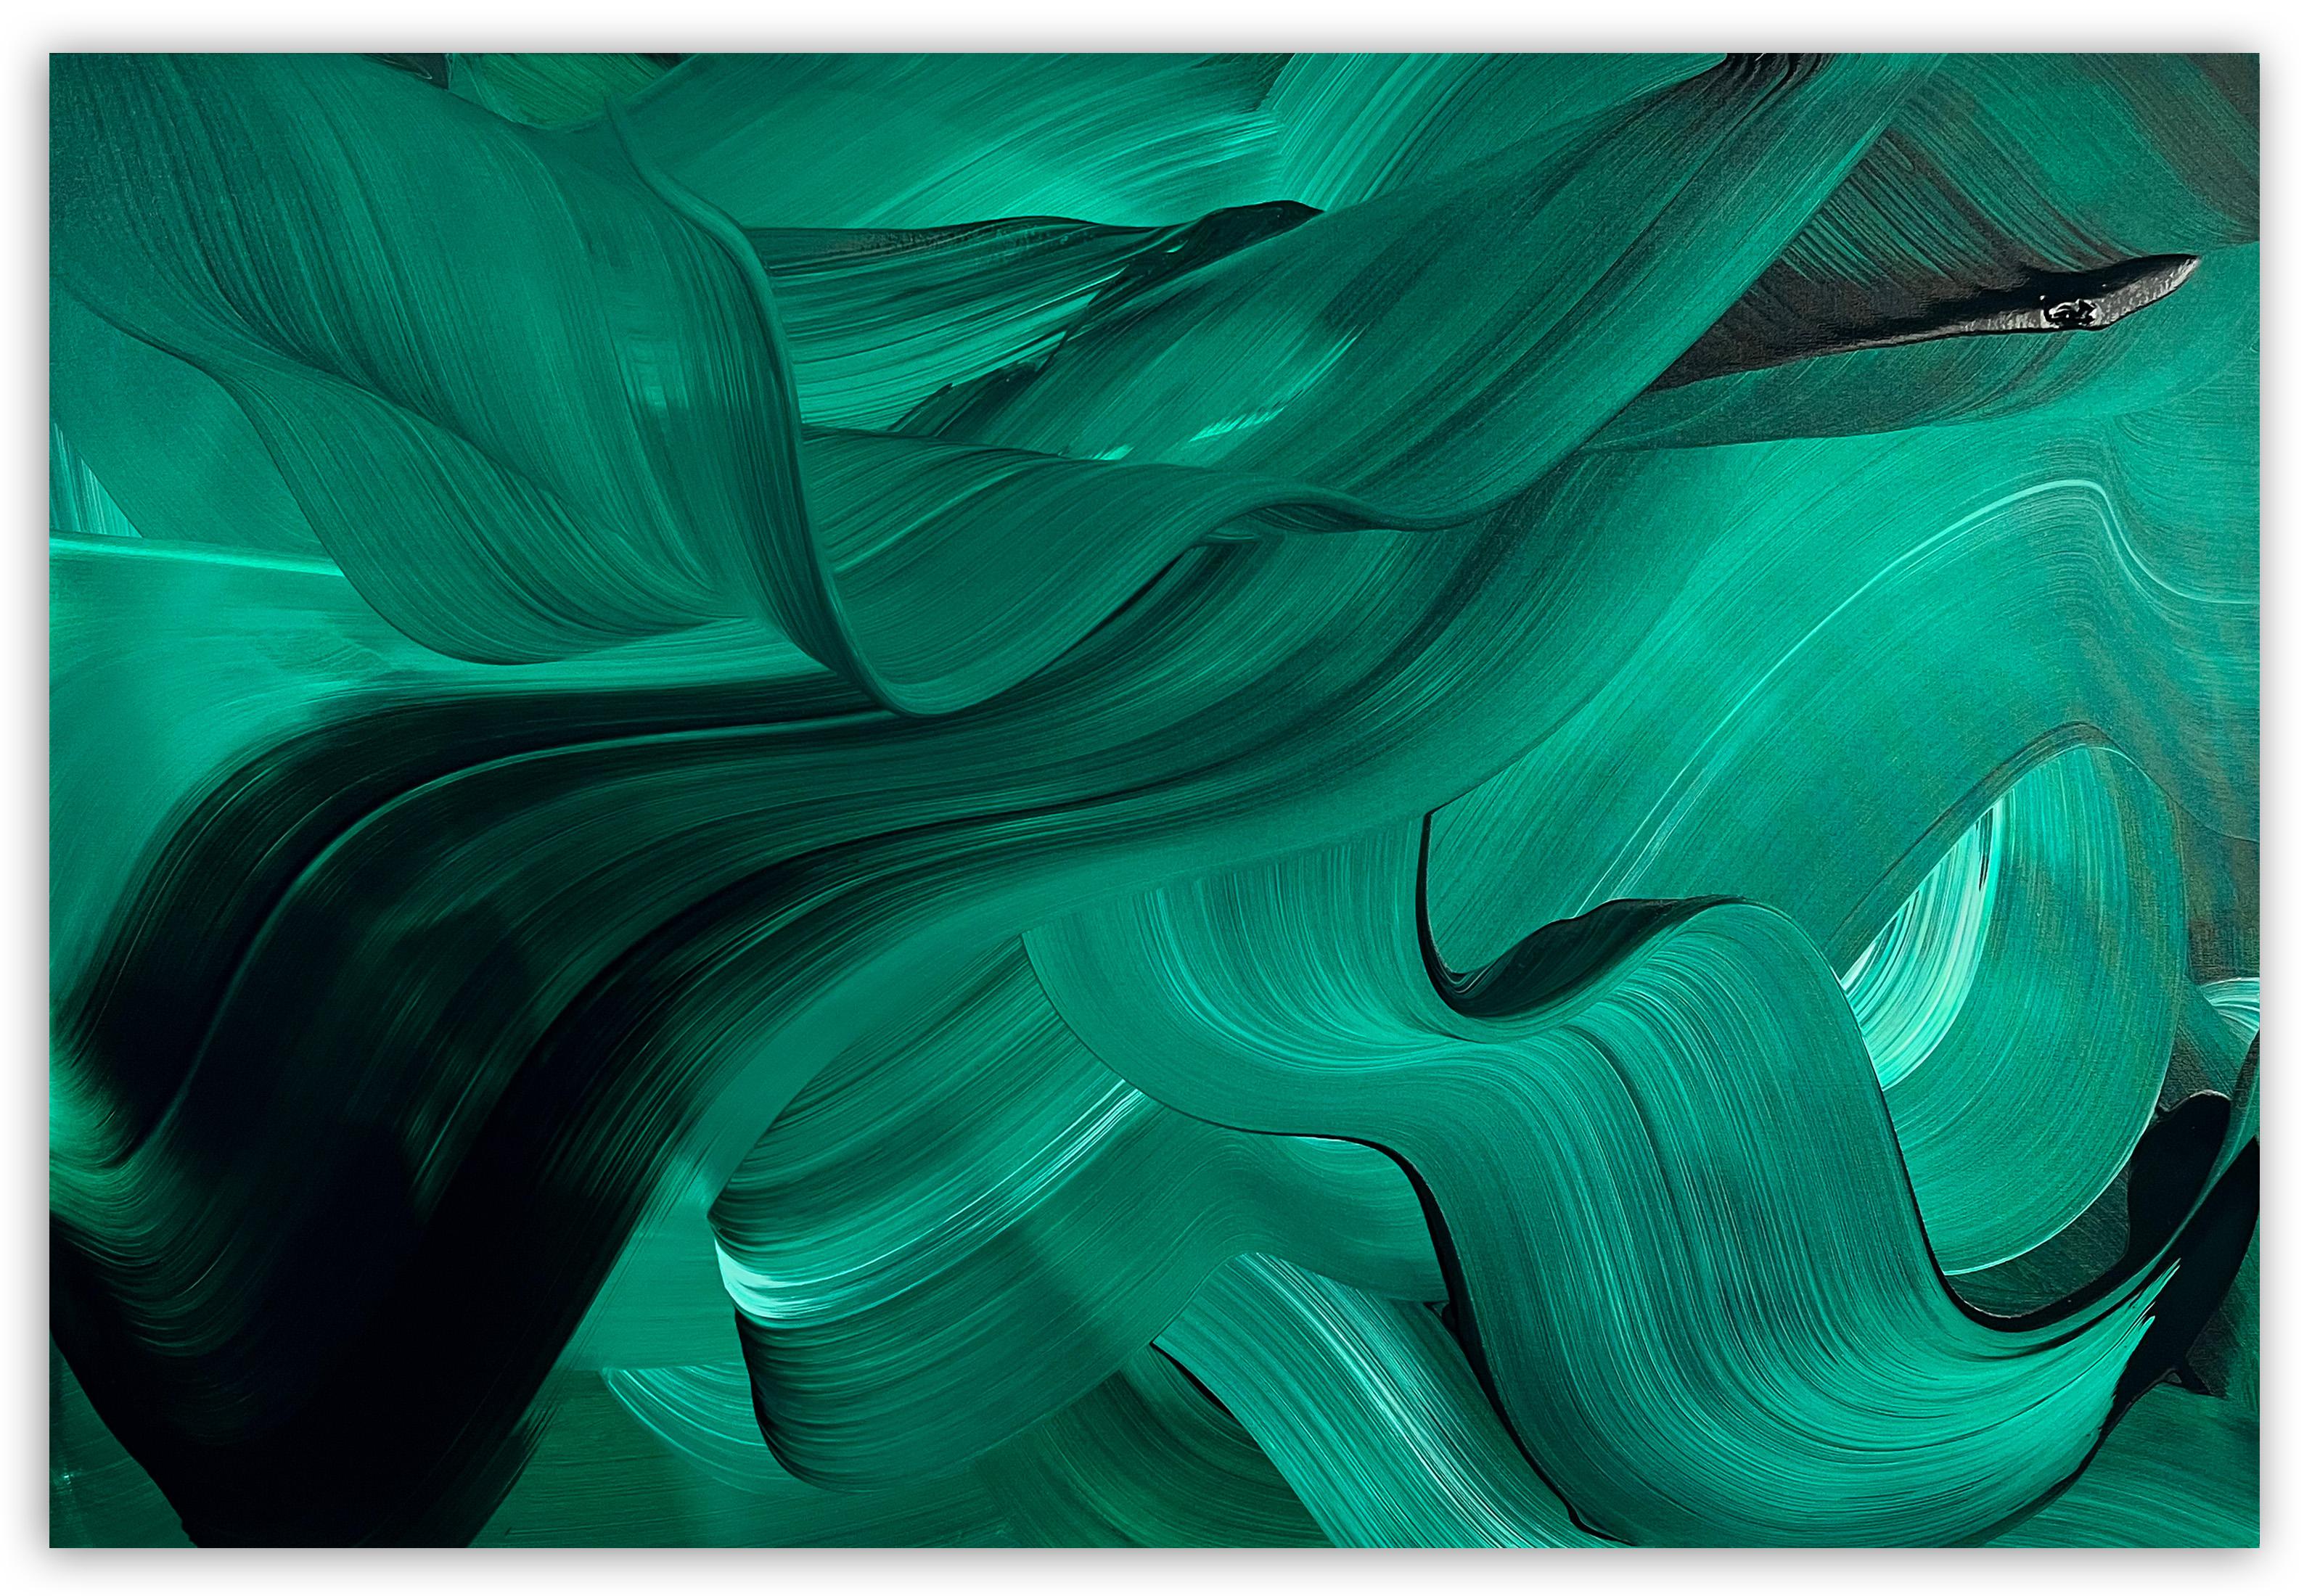 Abstract Painting Nikolaos Schizas - velours vert (peinture abstraite)